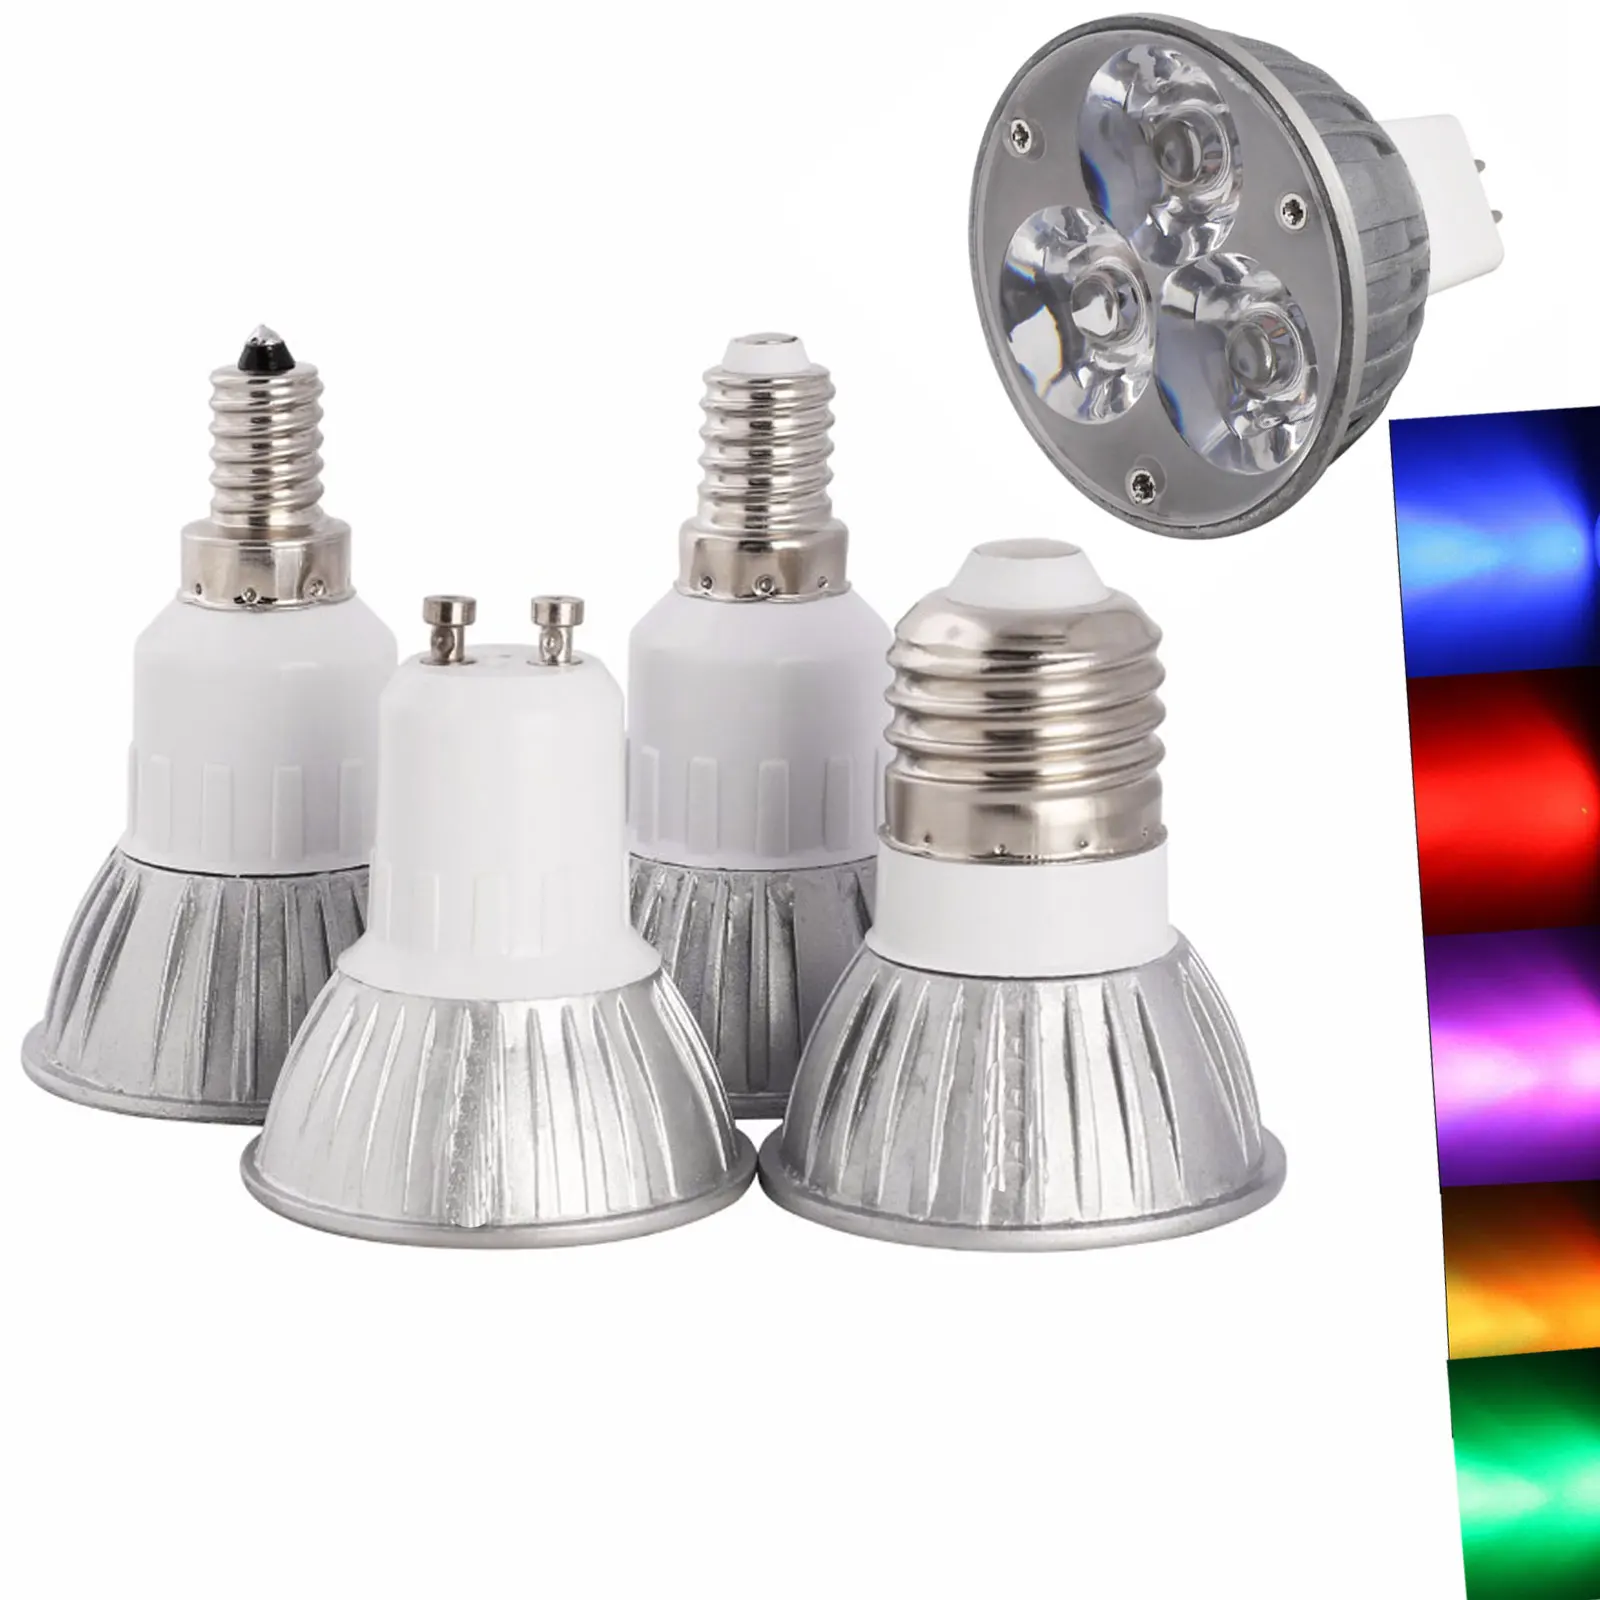 

High Quality 3W GU10 E27 E14 MR16 E12 B15 B22 GU5.3 LED Spotlight Light Bulb Chandeliers Replace 30W Halogen Lamp 12V 85-265V